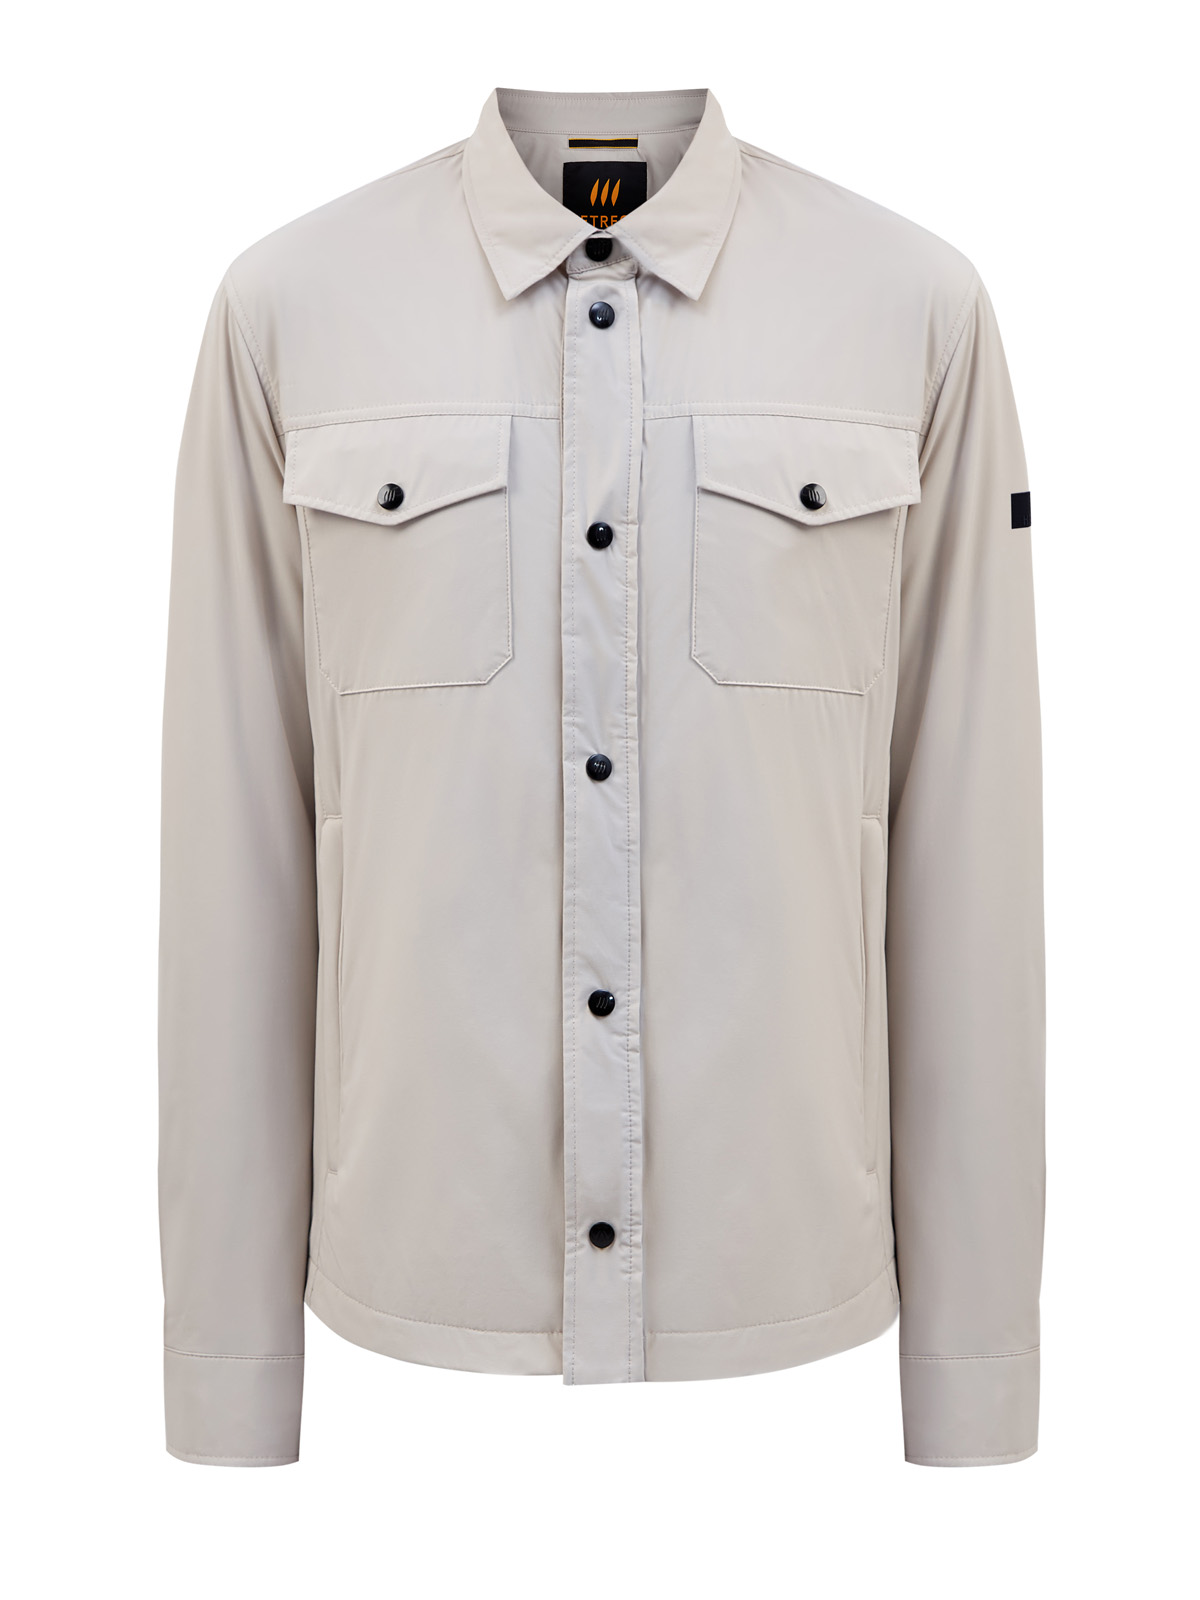 Куртка-рубашка из гладкого матового нейлона с контрастным патчем HETREGO, цвет бежевый, размер XL;2XL